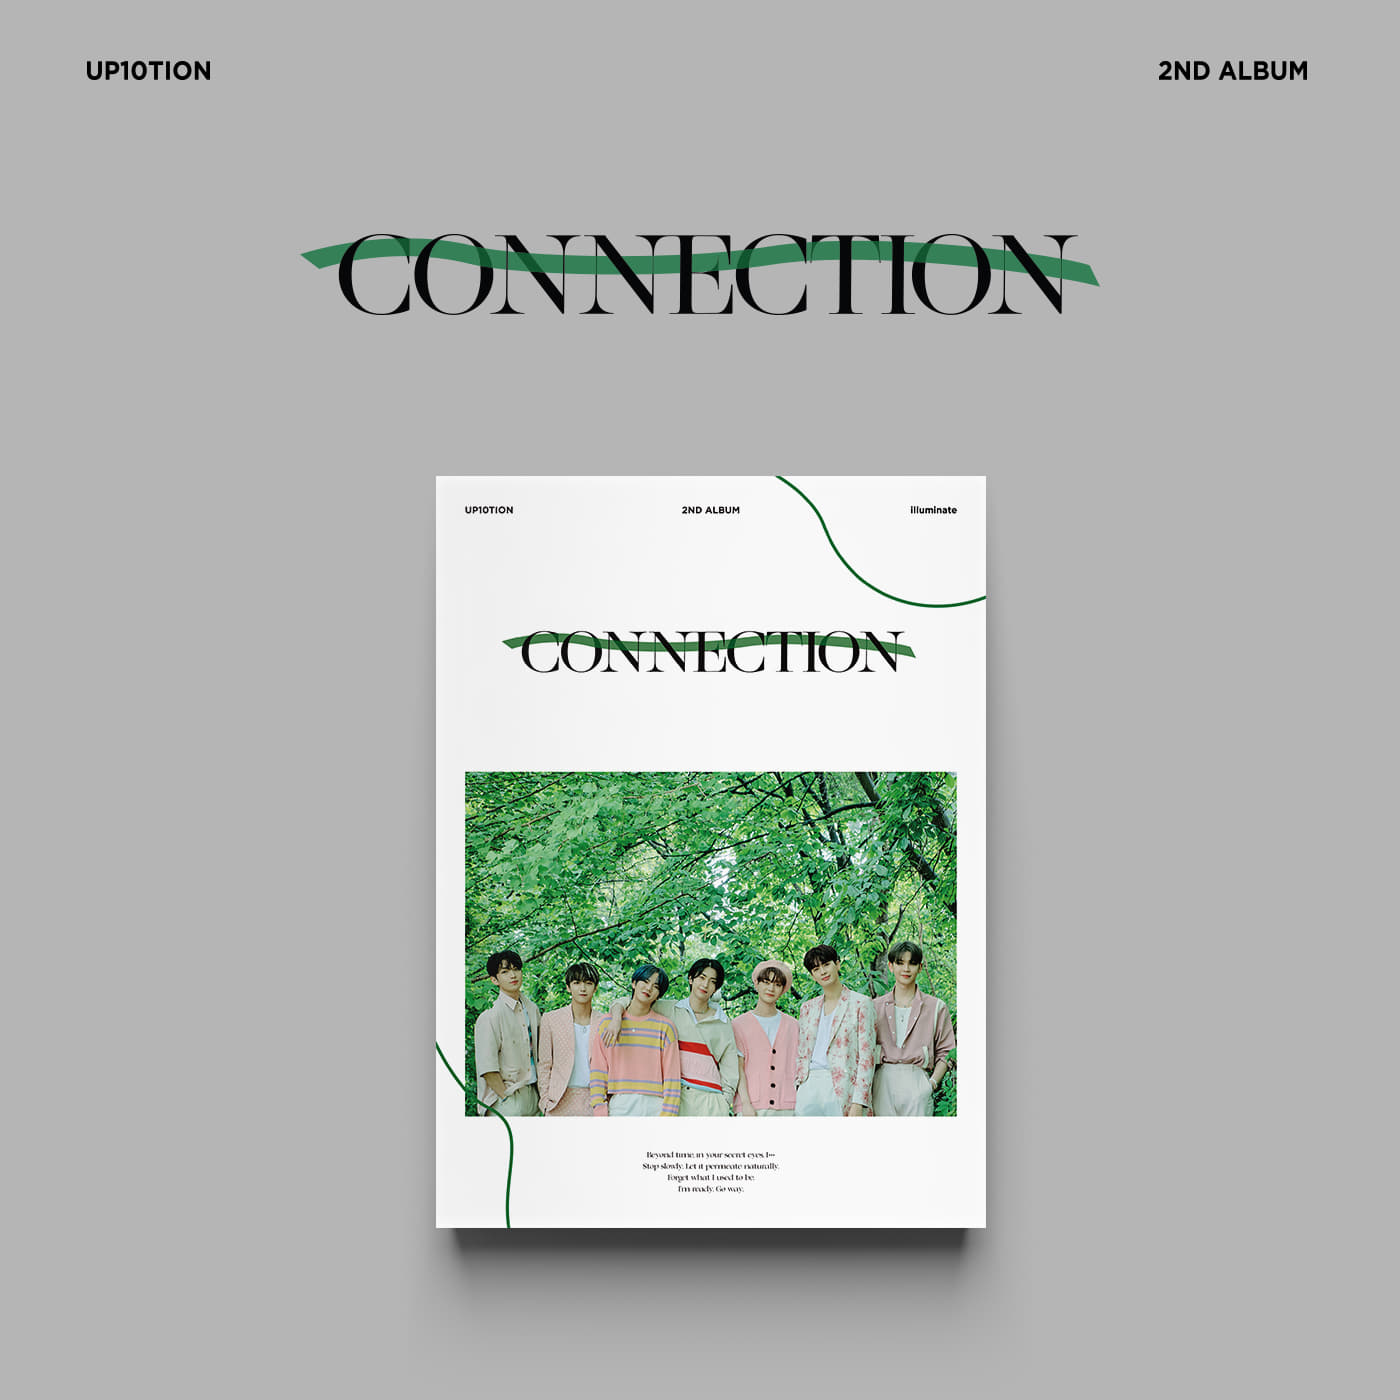 업텐션(UP10TION) - 2nd Album [CONNECTION] (illuminate ver.)케이팝스토어(kpop store)